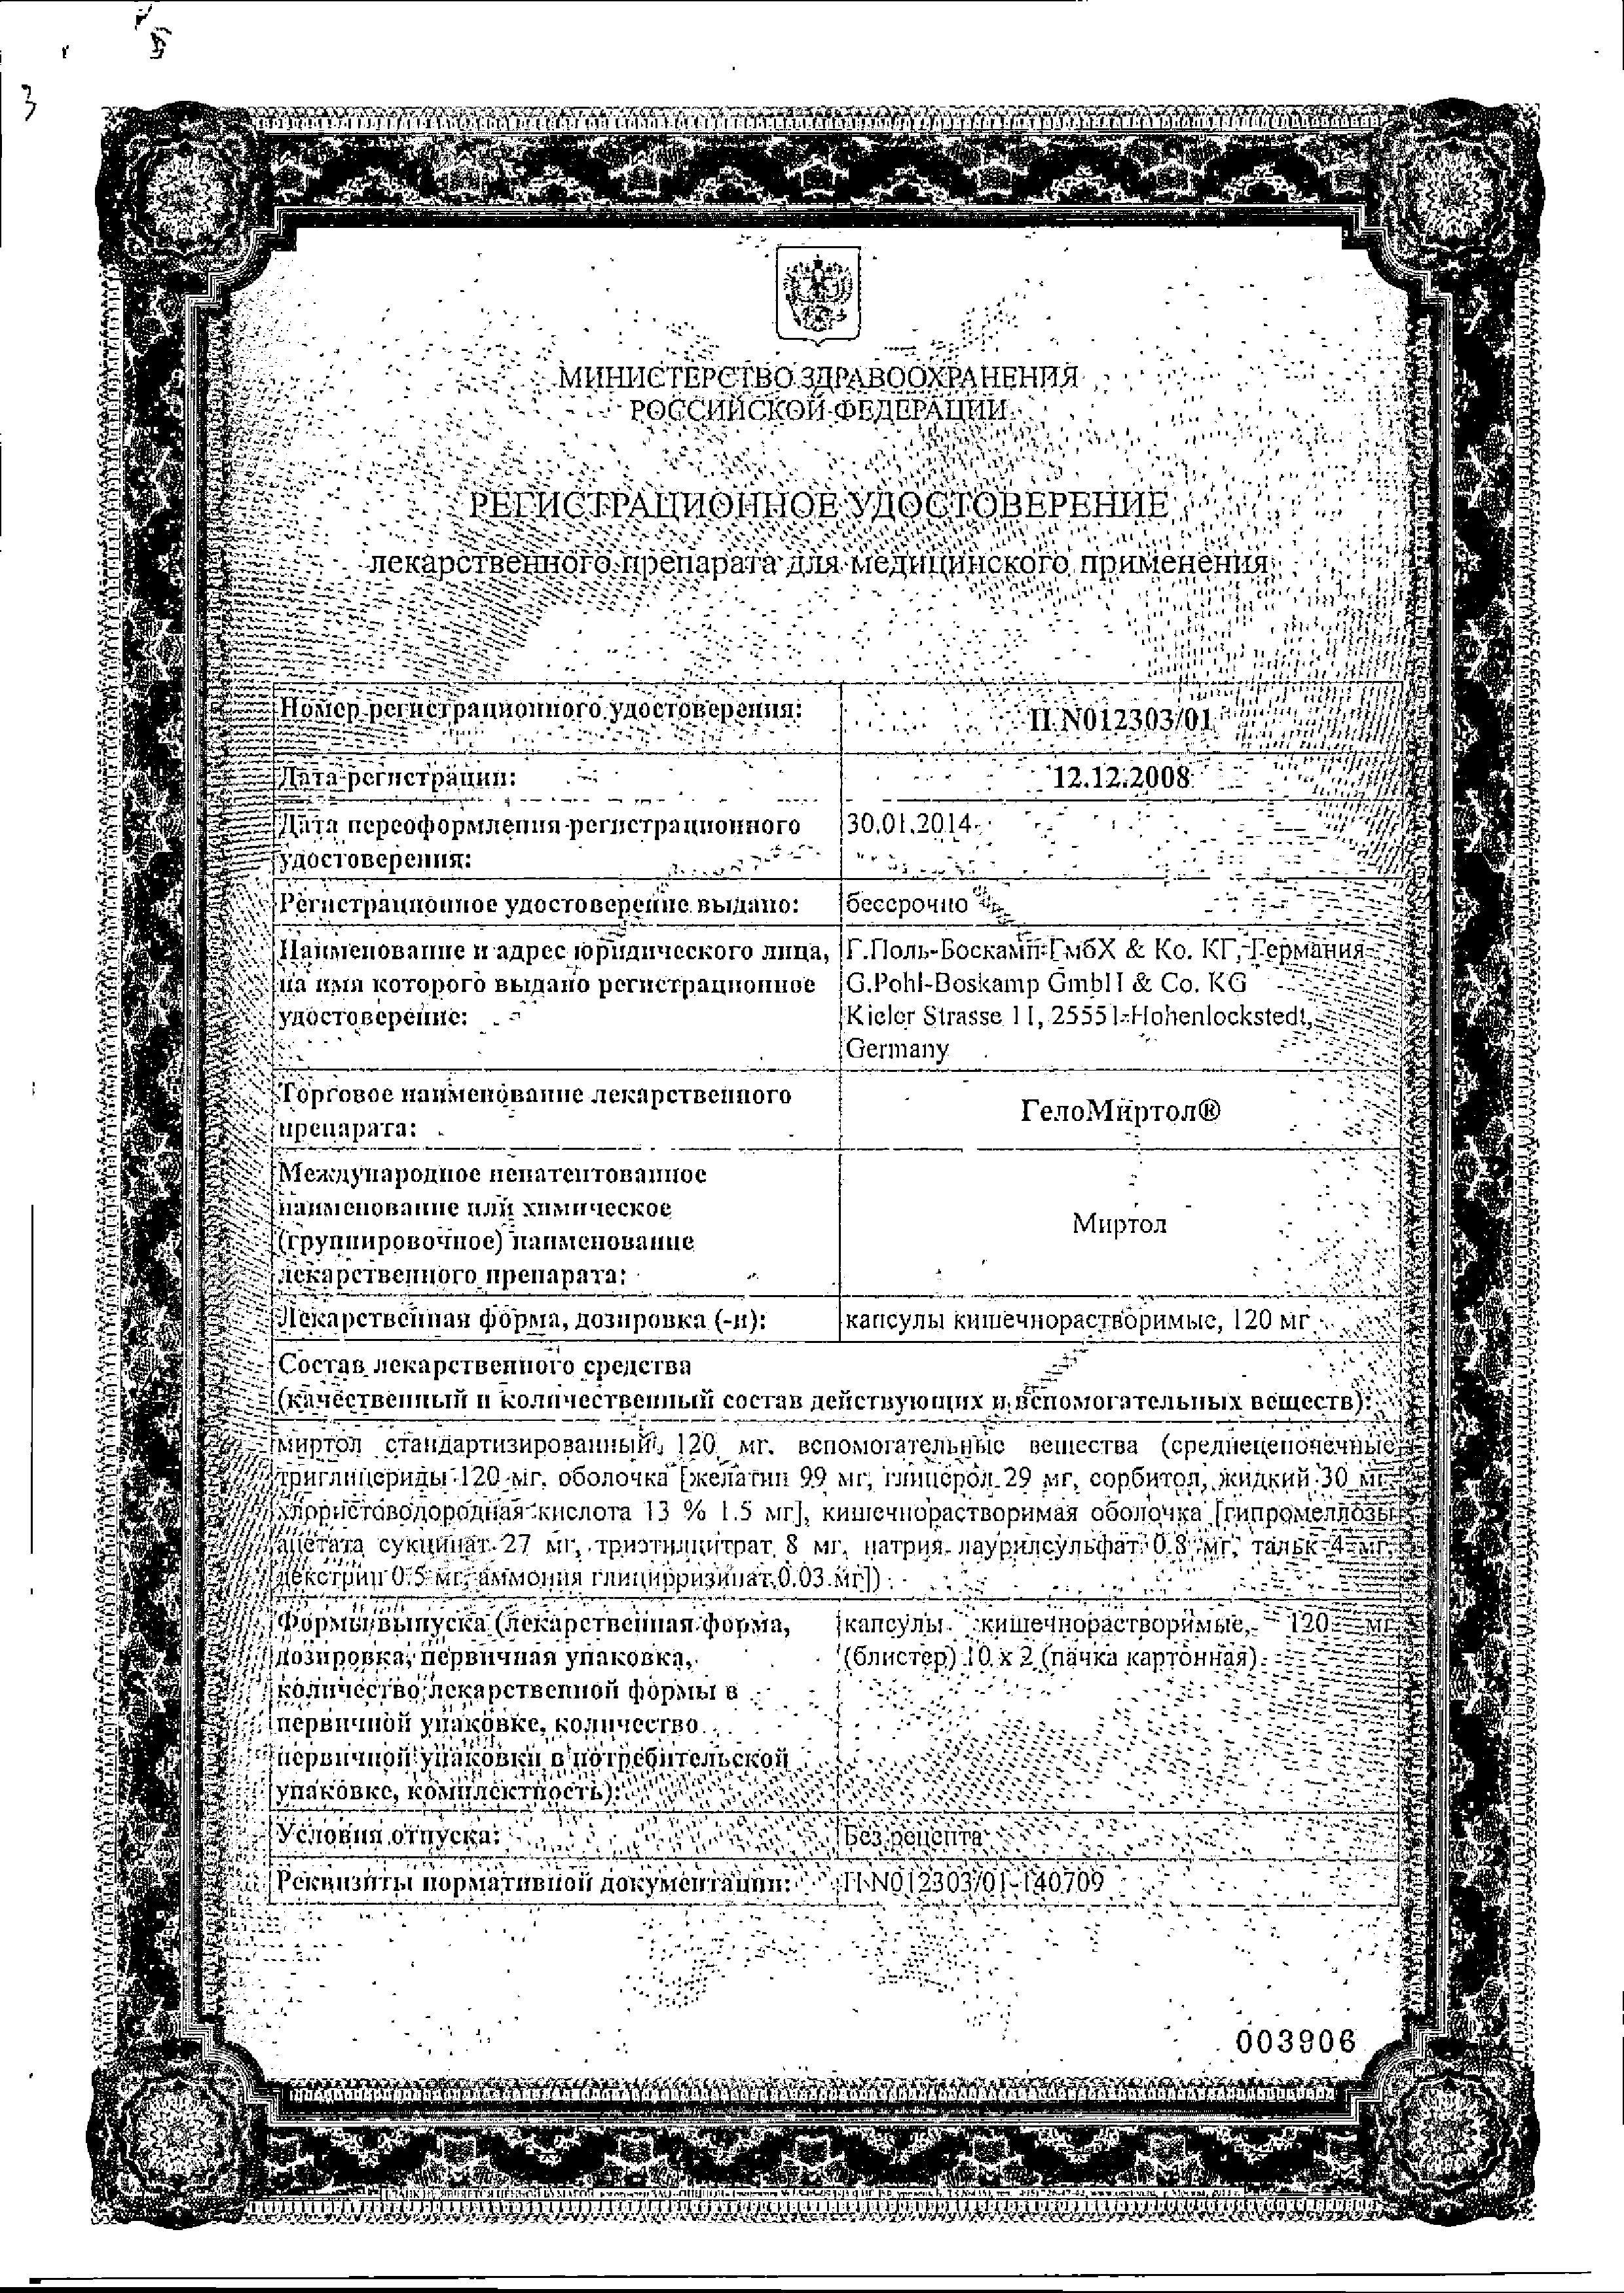 ГелоМиртол сертификат